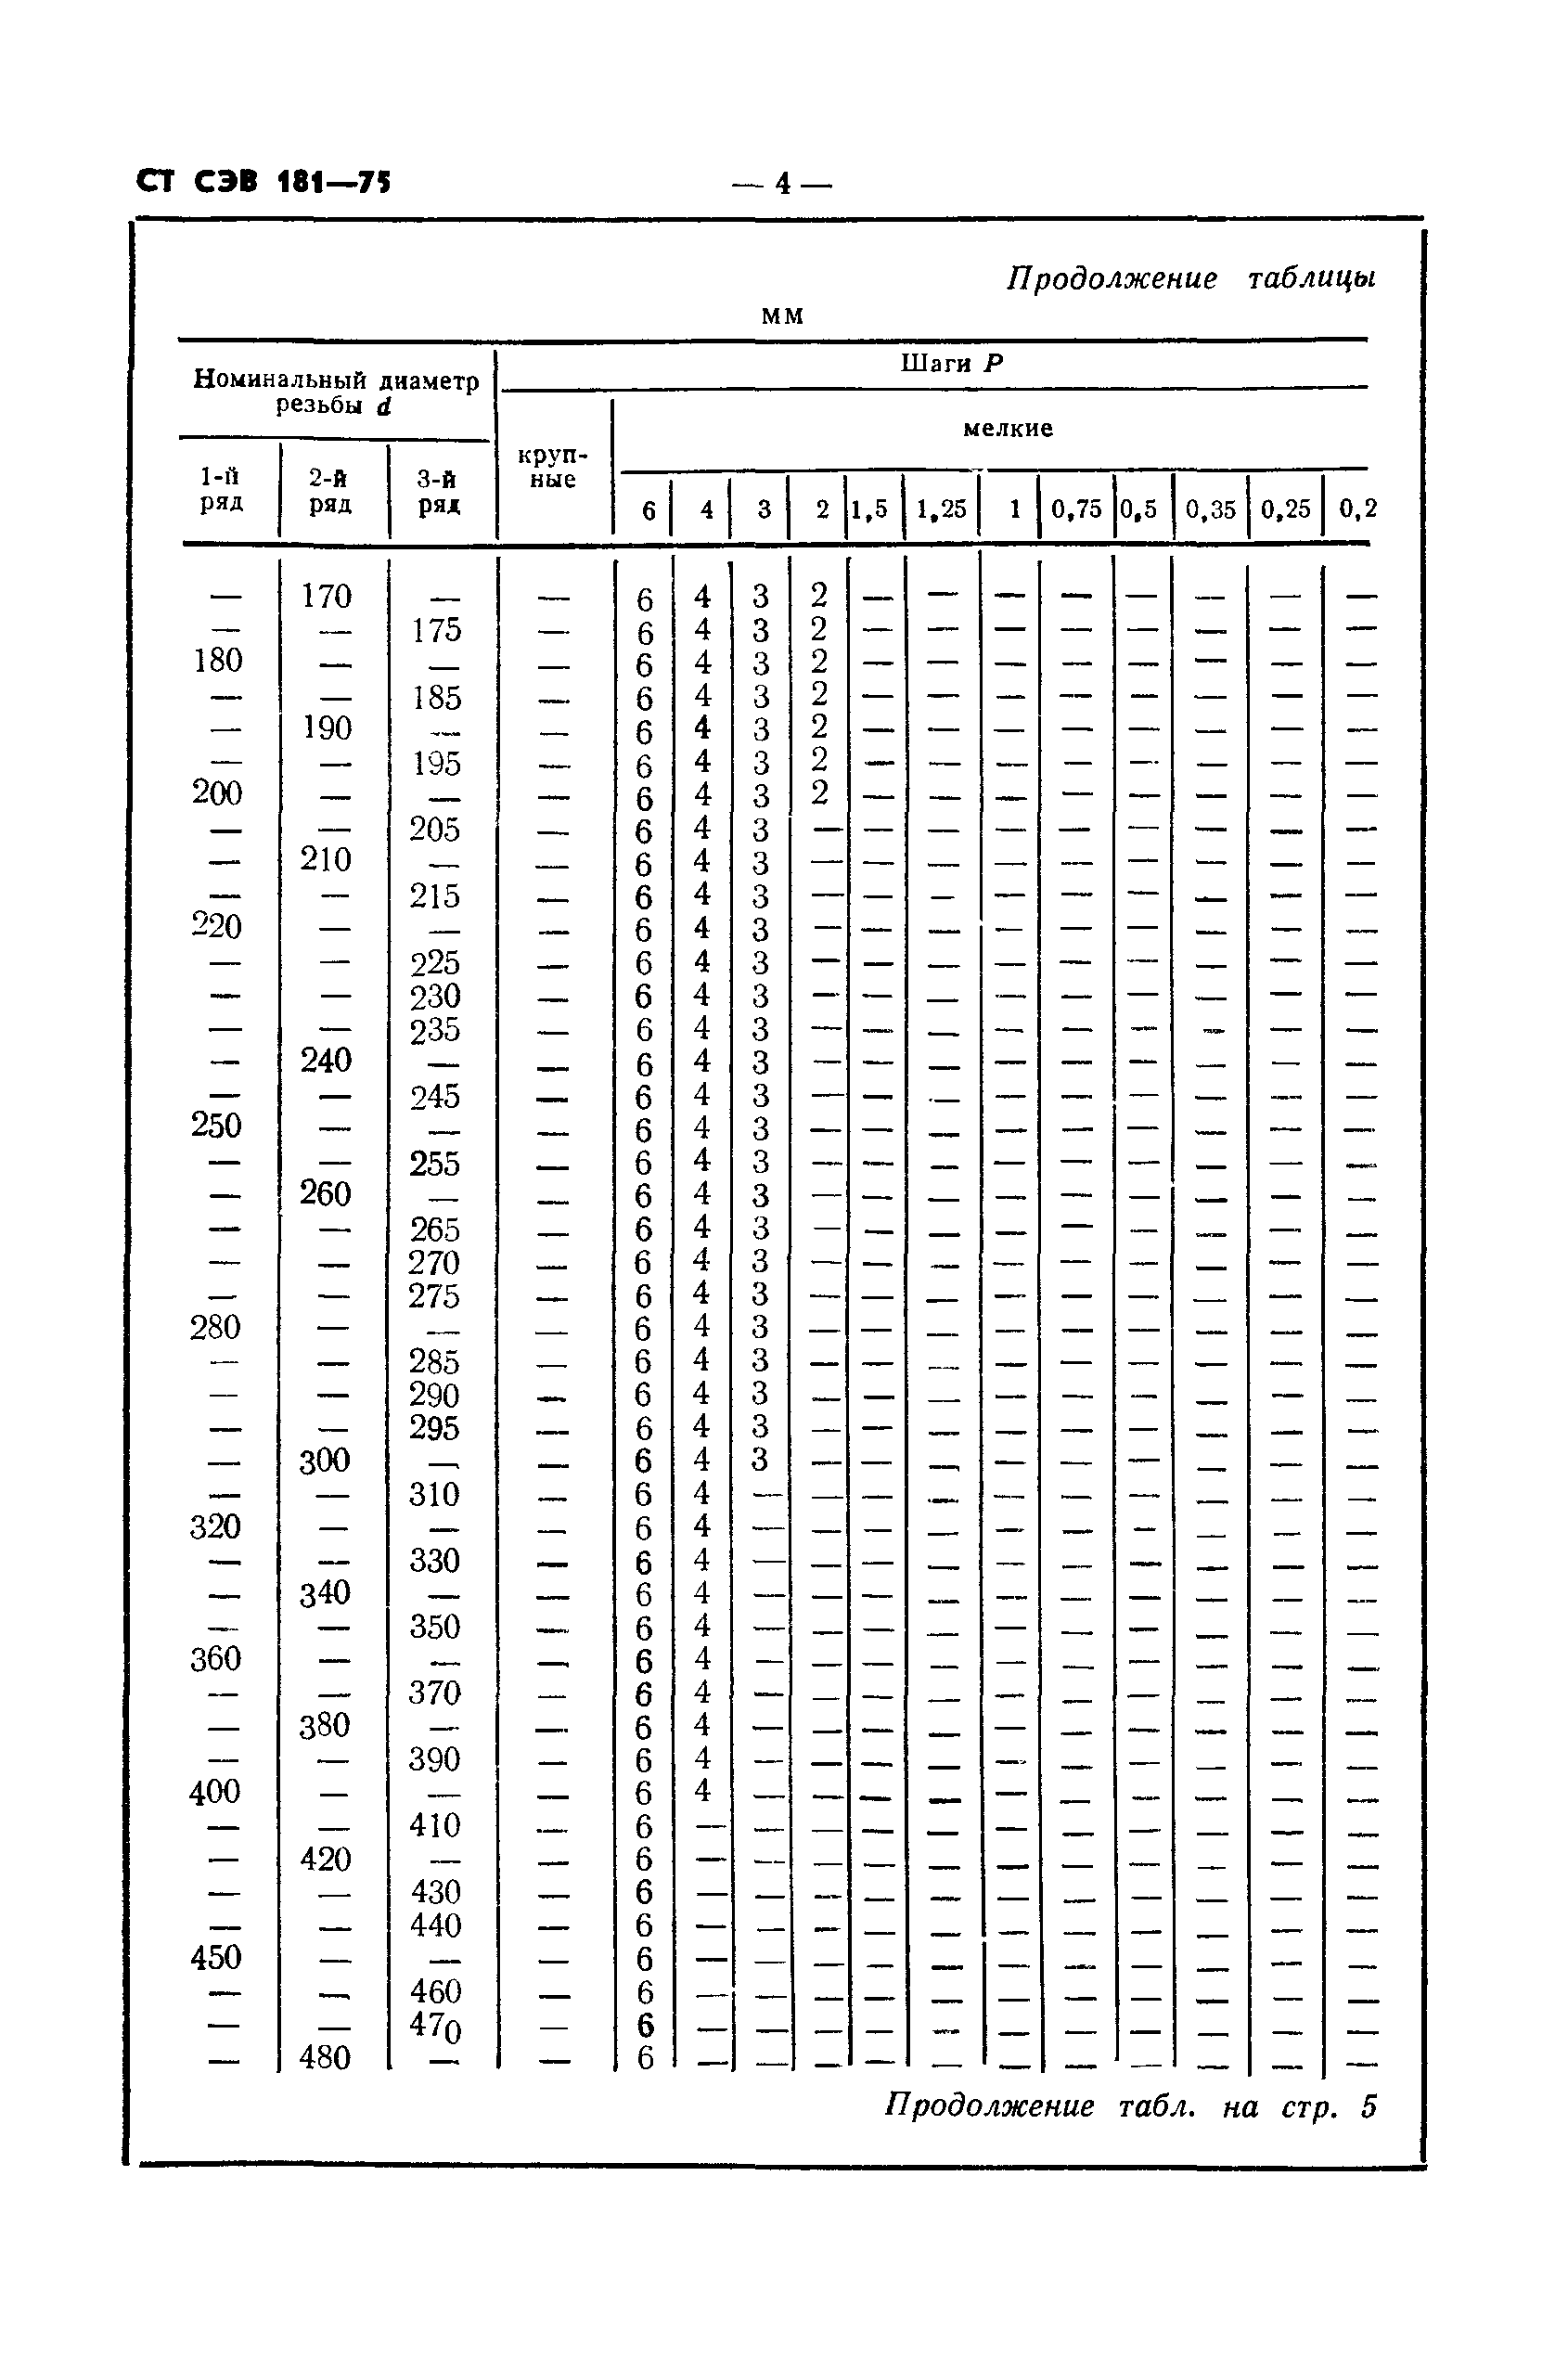 СТ СЭВ 181-75